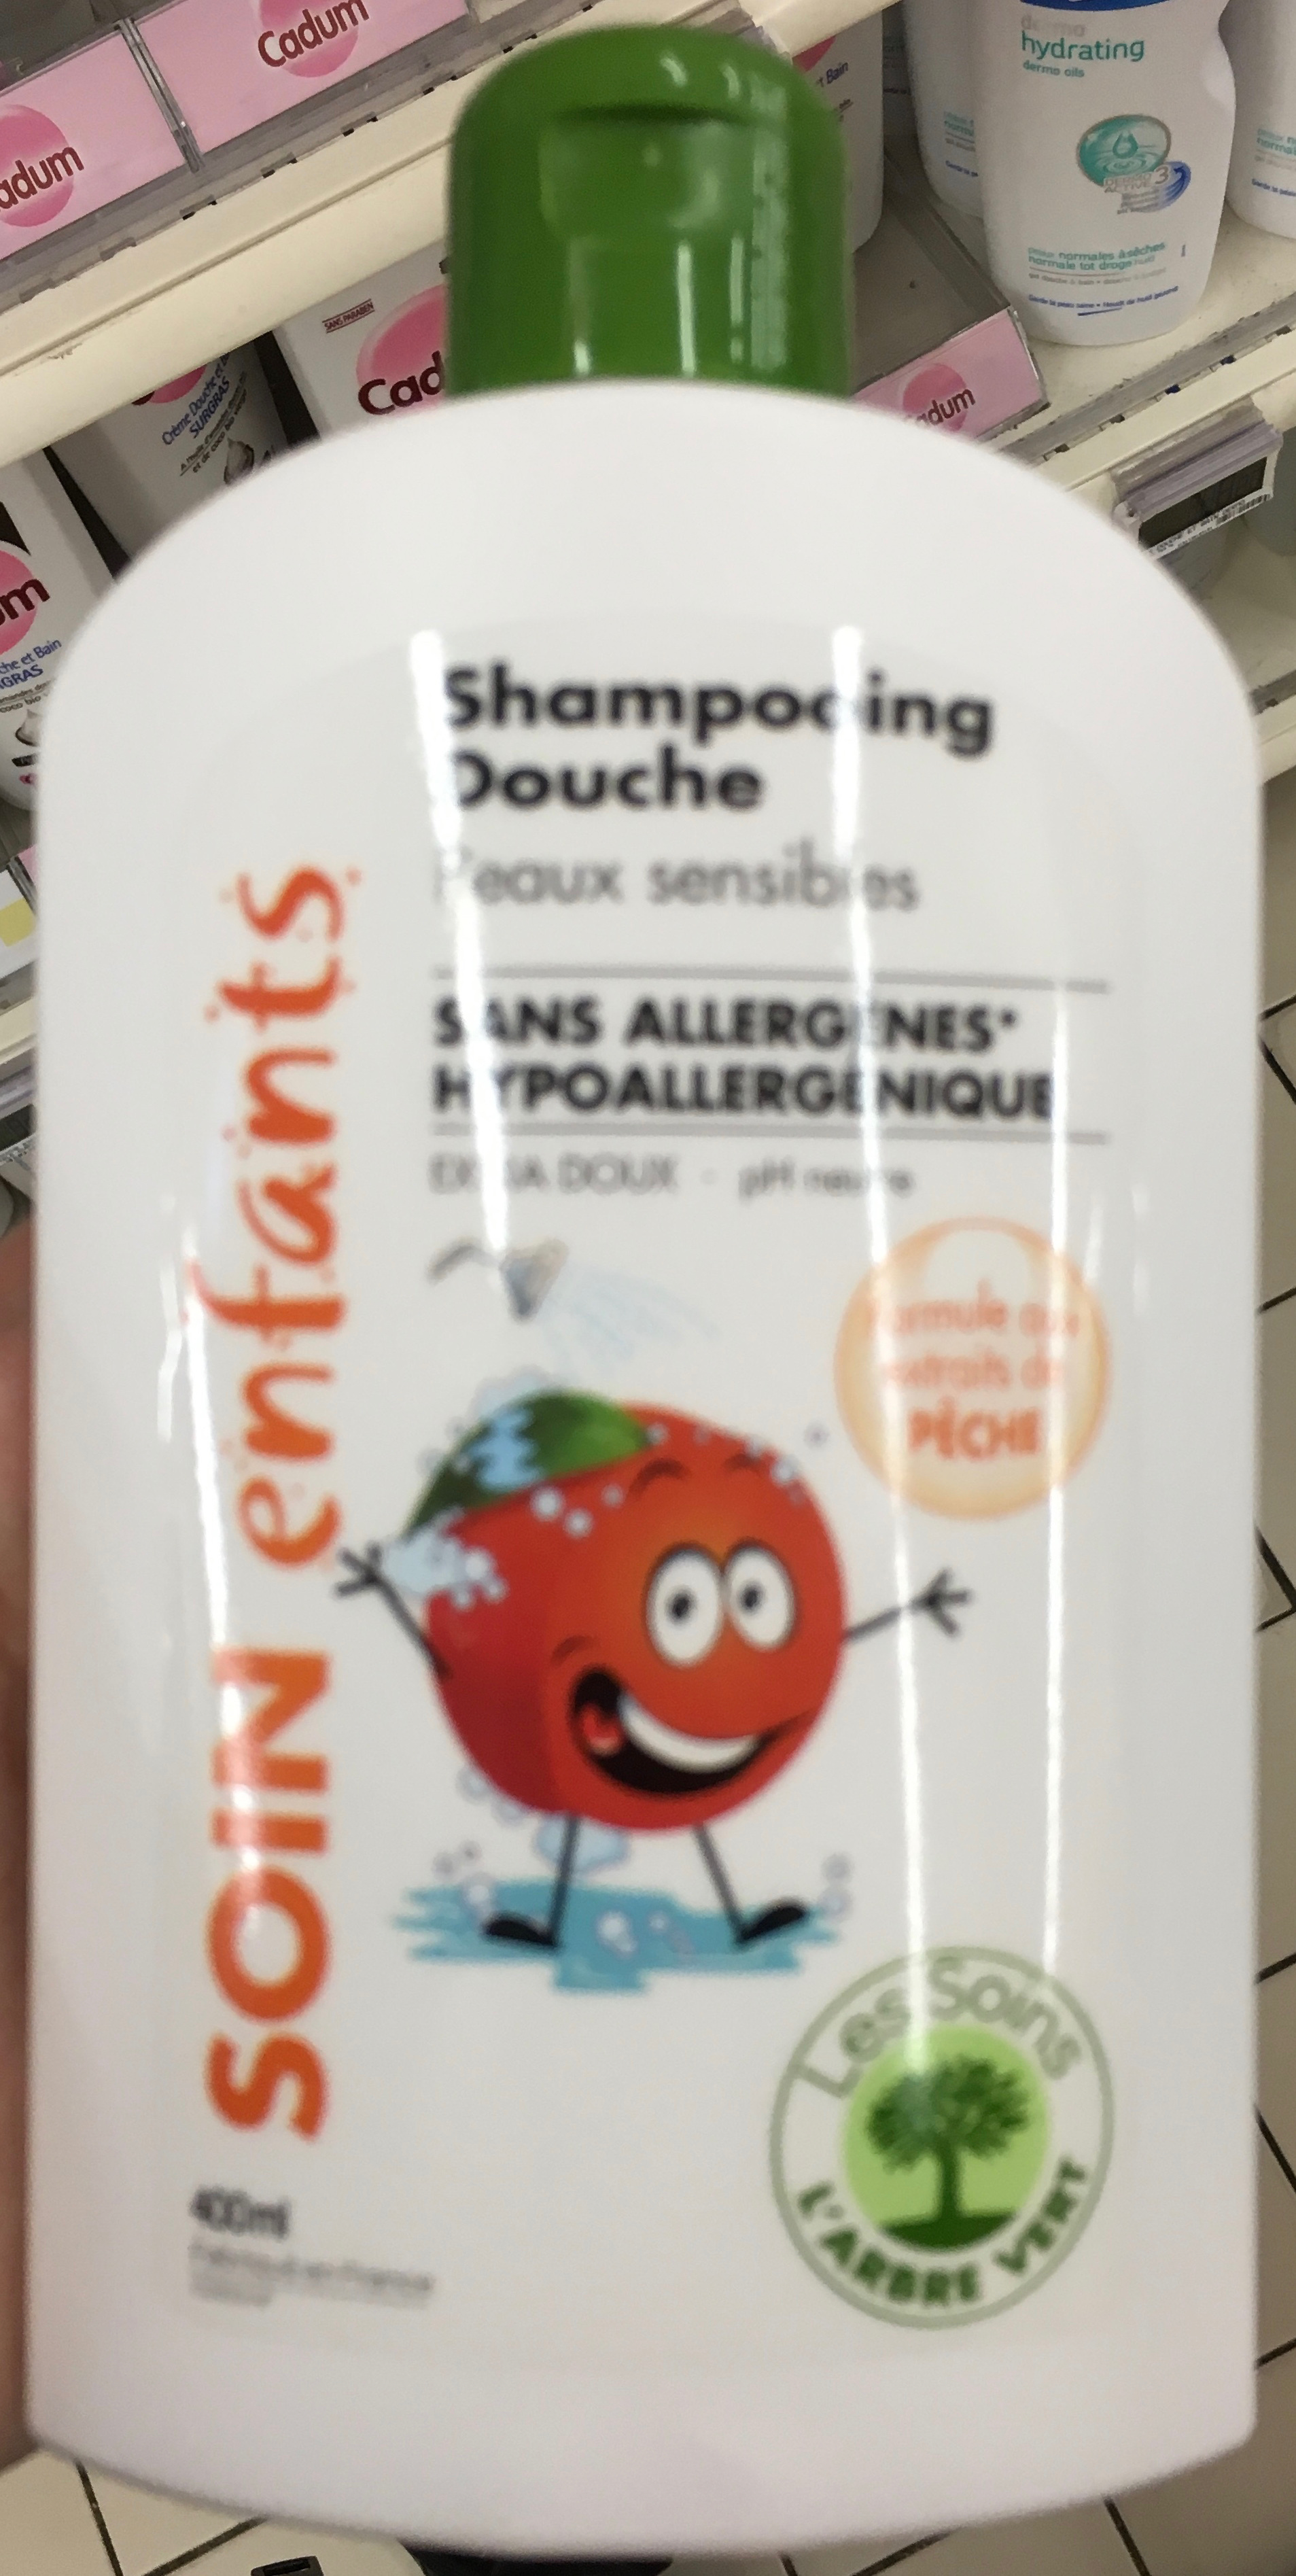 Shampooing douche soin enfants - Produit - fr